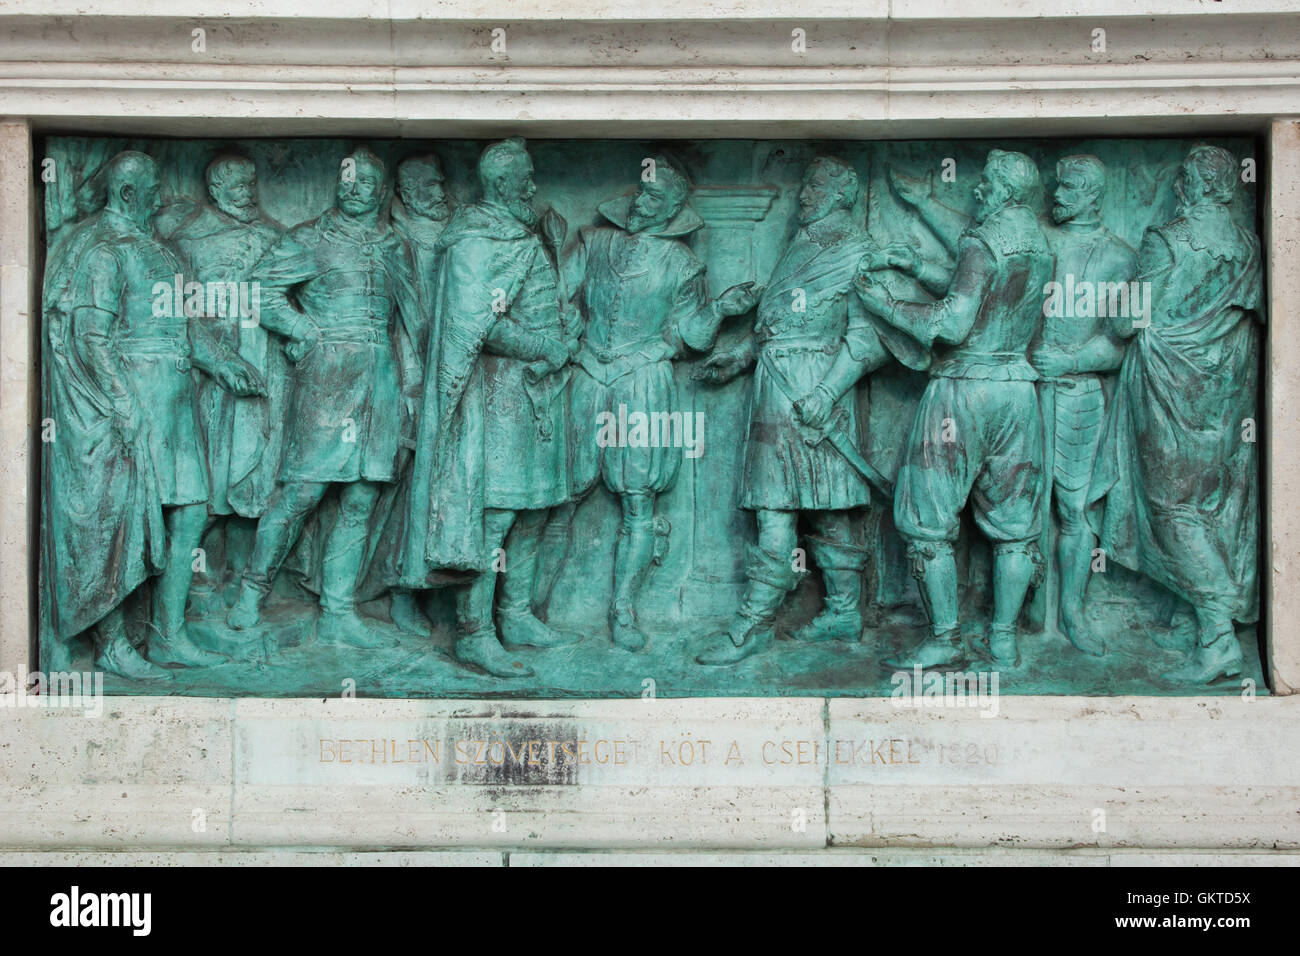 Gabriel Bethlen schließt einen Vertrag mit Böhmen im Jahre 1620. Bronzerelief von ungarischen Bildhauer Istvan Szabo auf dem Millennium-Denkmal in der Heldenplatz in Budapest, Ungarn. Stockfoto